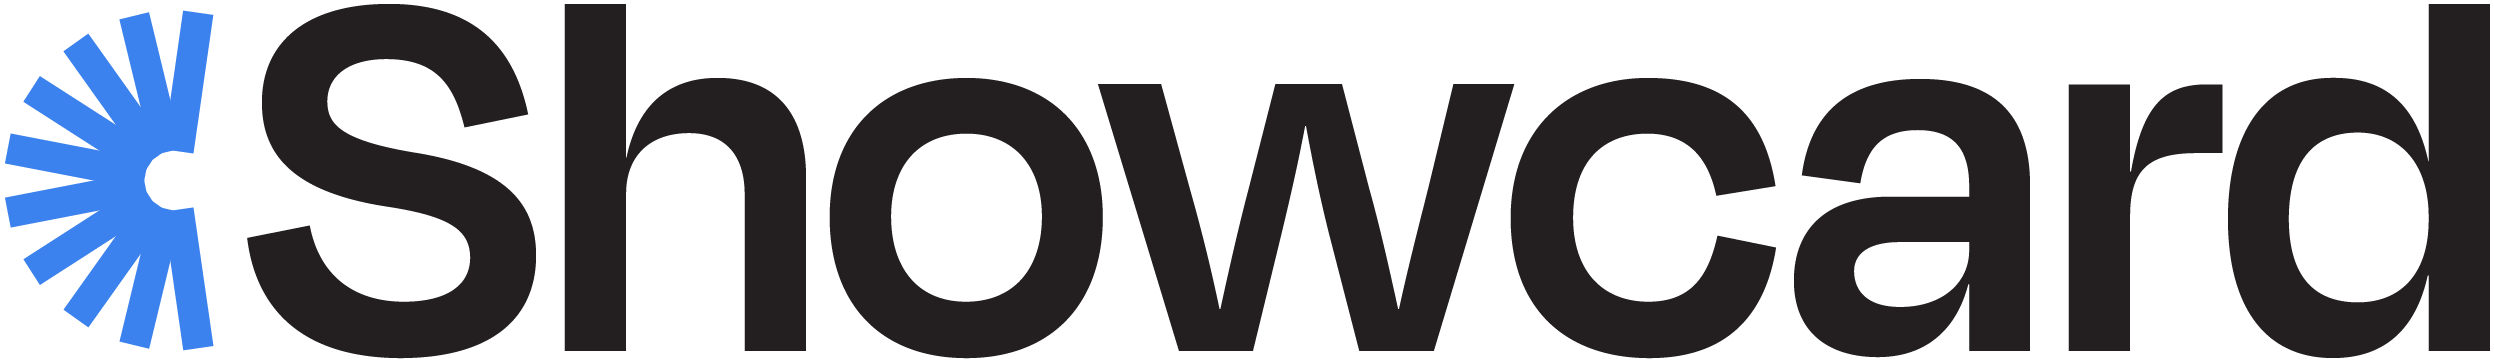 Showcard's Logo